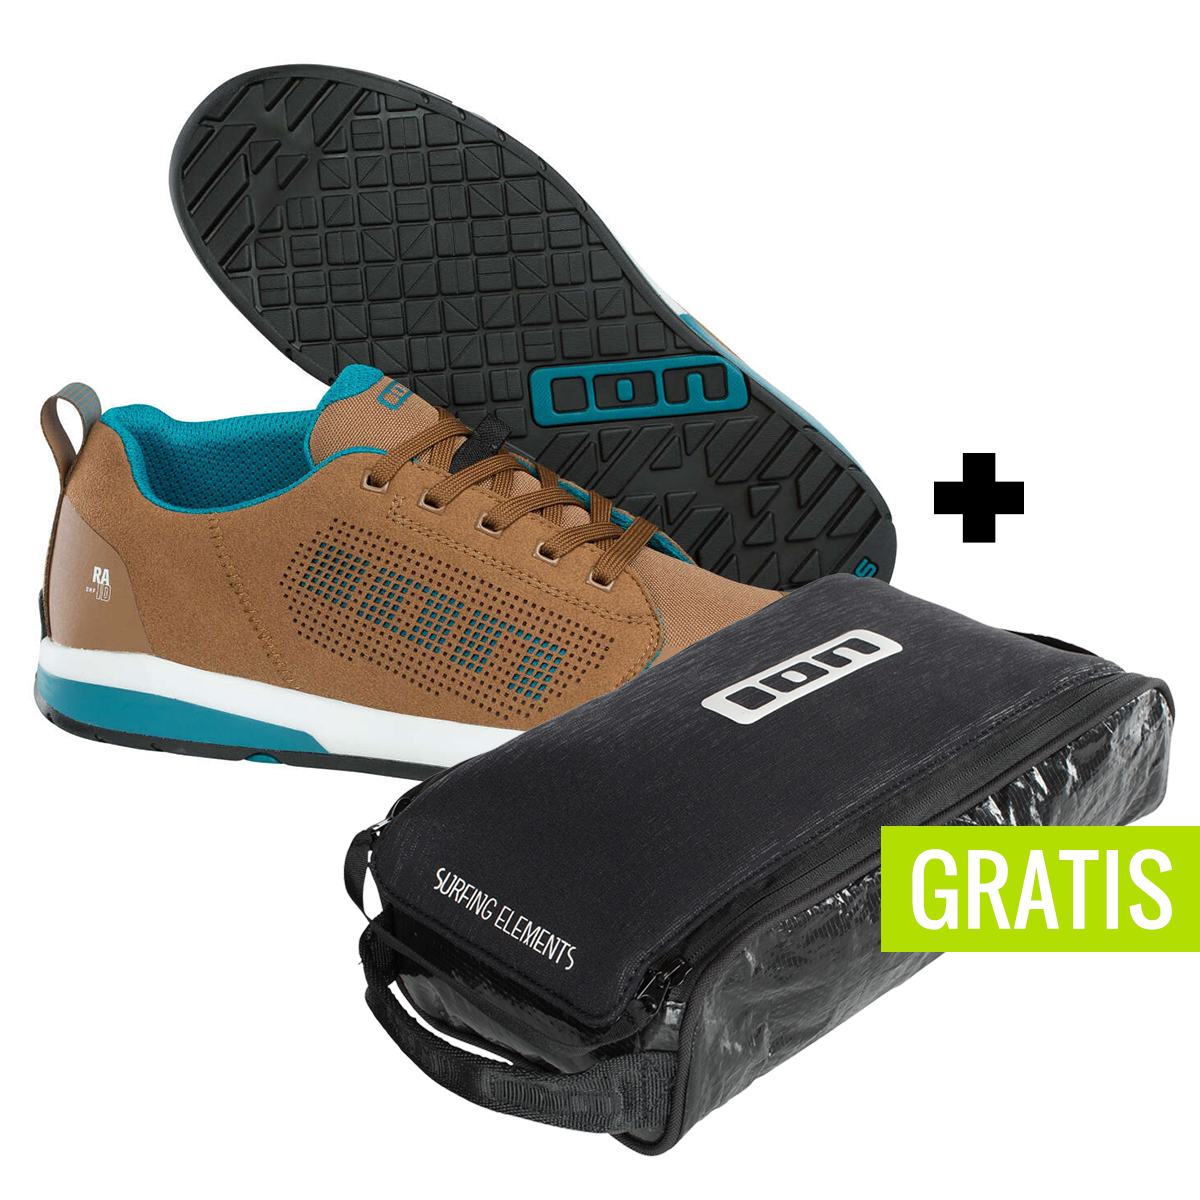 ION Scarpe MTB Raid_Amp Single Malt + free shoe bag